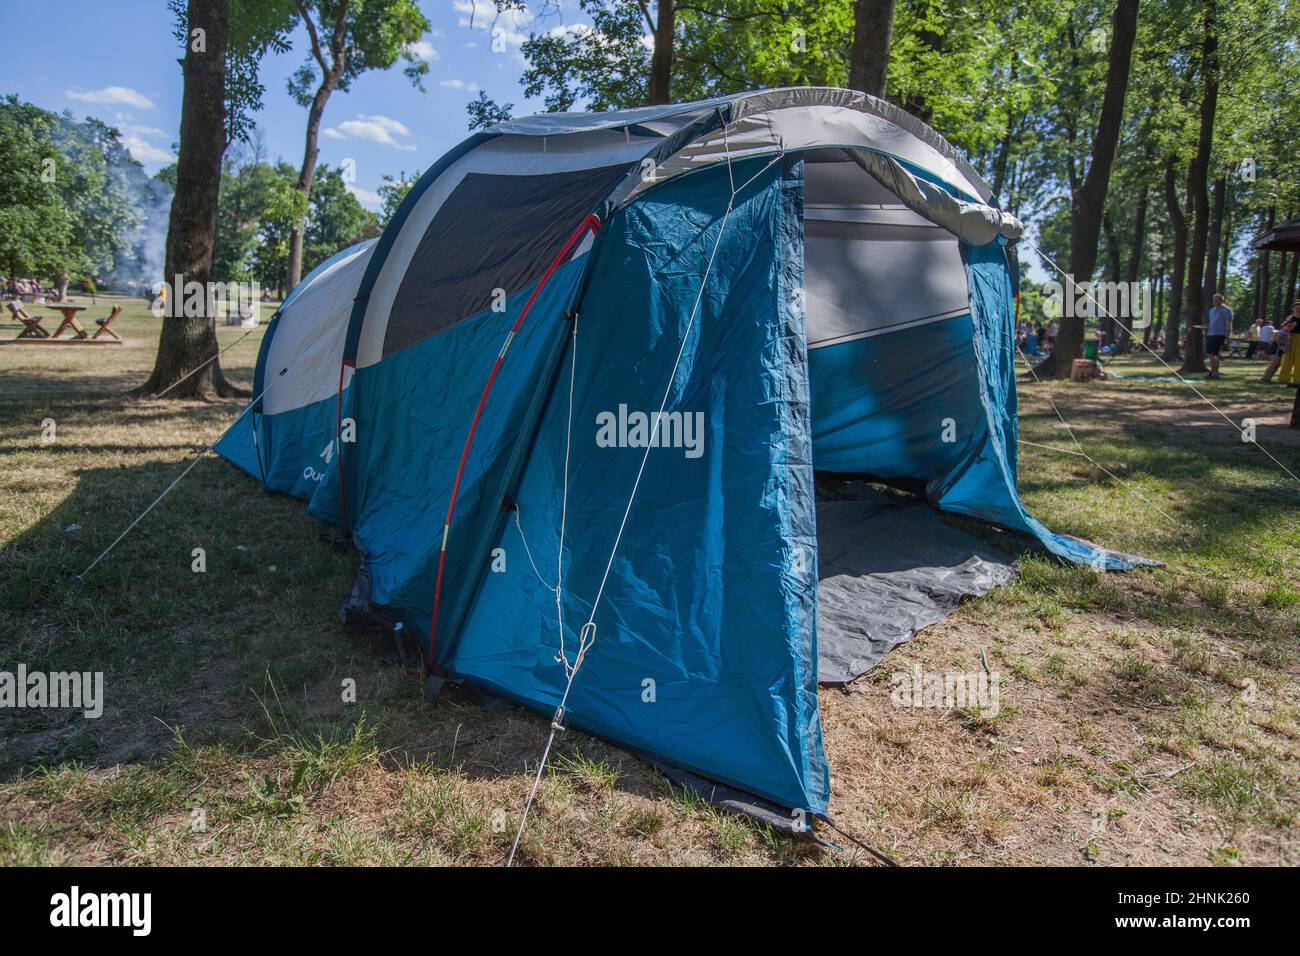 Tente de camping au camping sauvage entourant la forêt de pins à la lumière du jour de l'été Banque D'Images